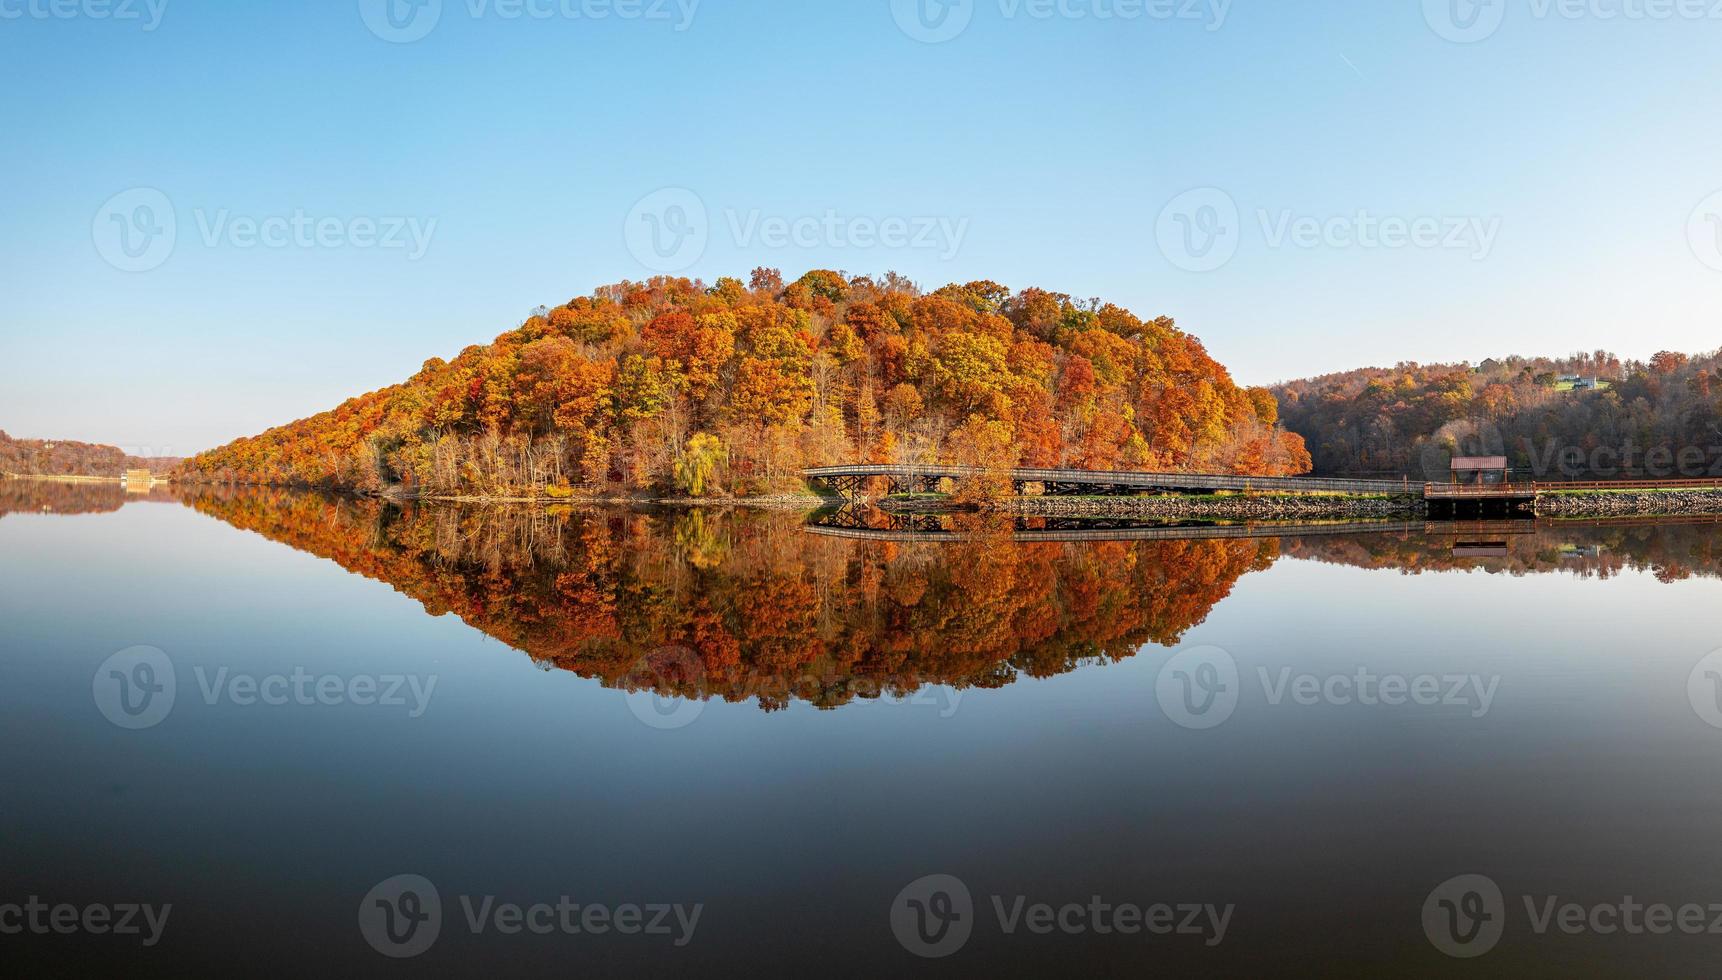 reflexo perfeito das folhas de outono no lago cheat foto